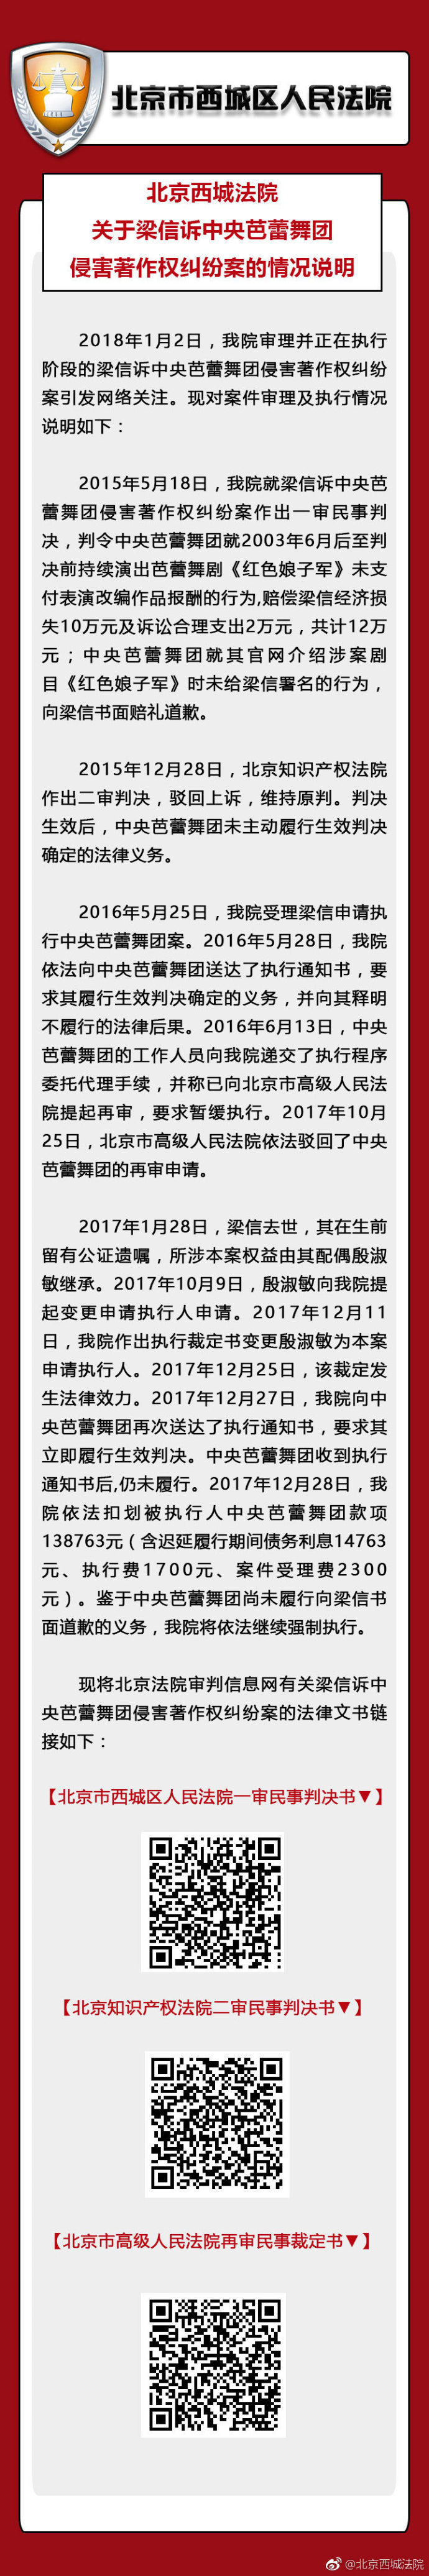 北京西城法院回应“中央芭蕾舞团声明”